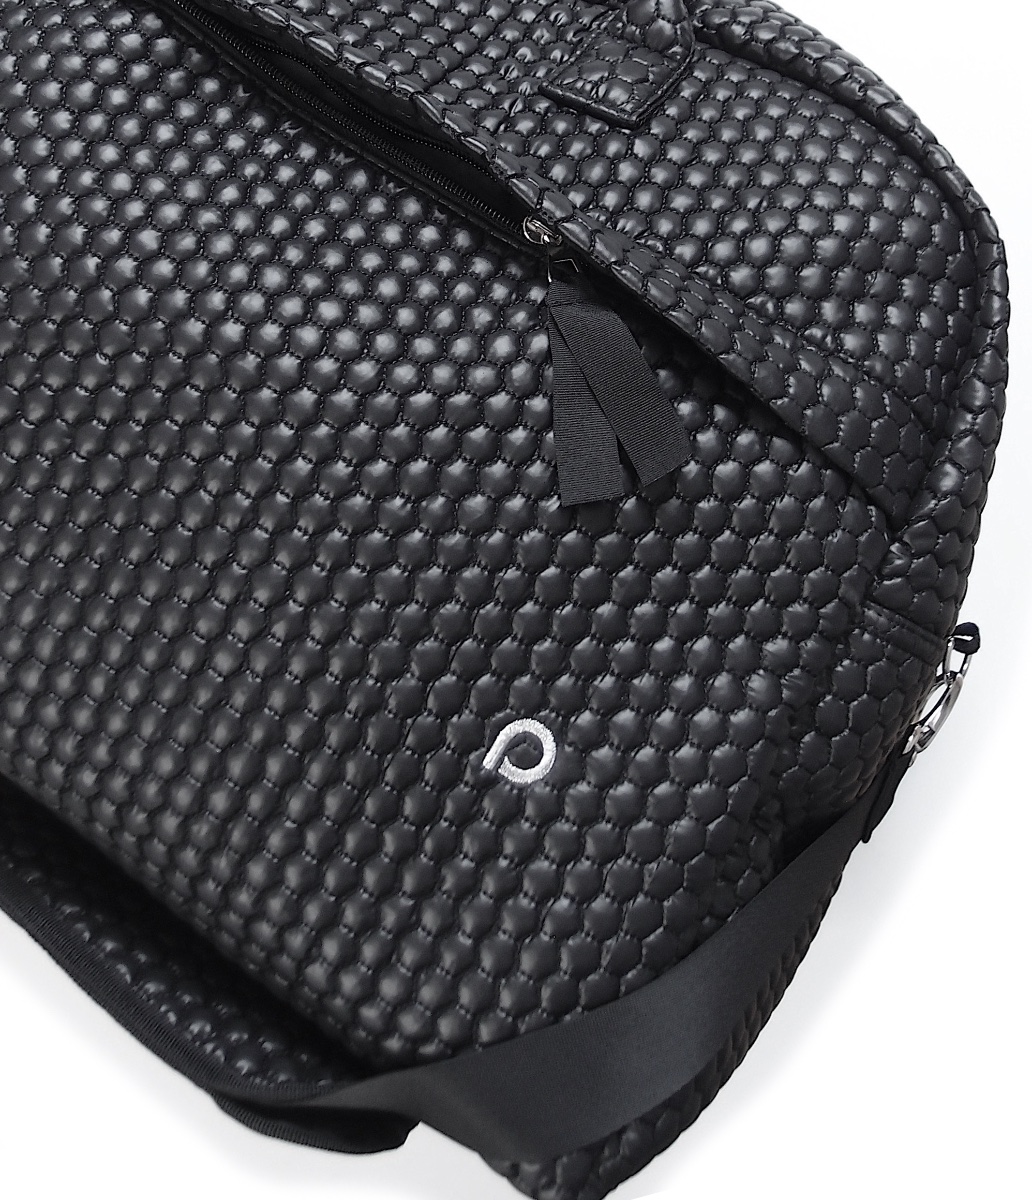 kliknutít zobrazíte maximální velikost obrázku cestovná taška Black Comb